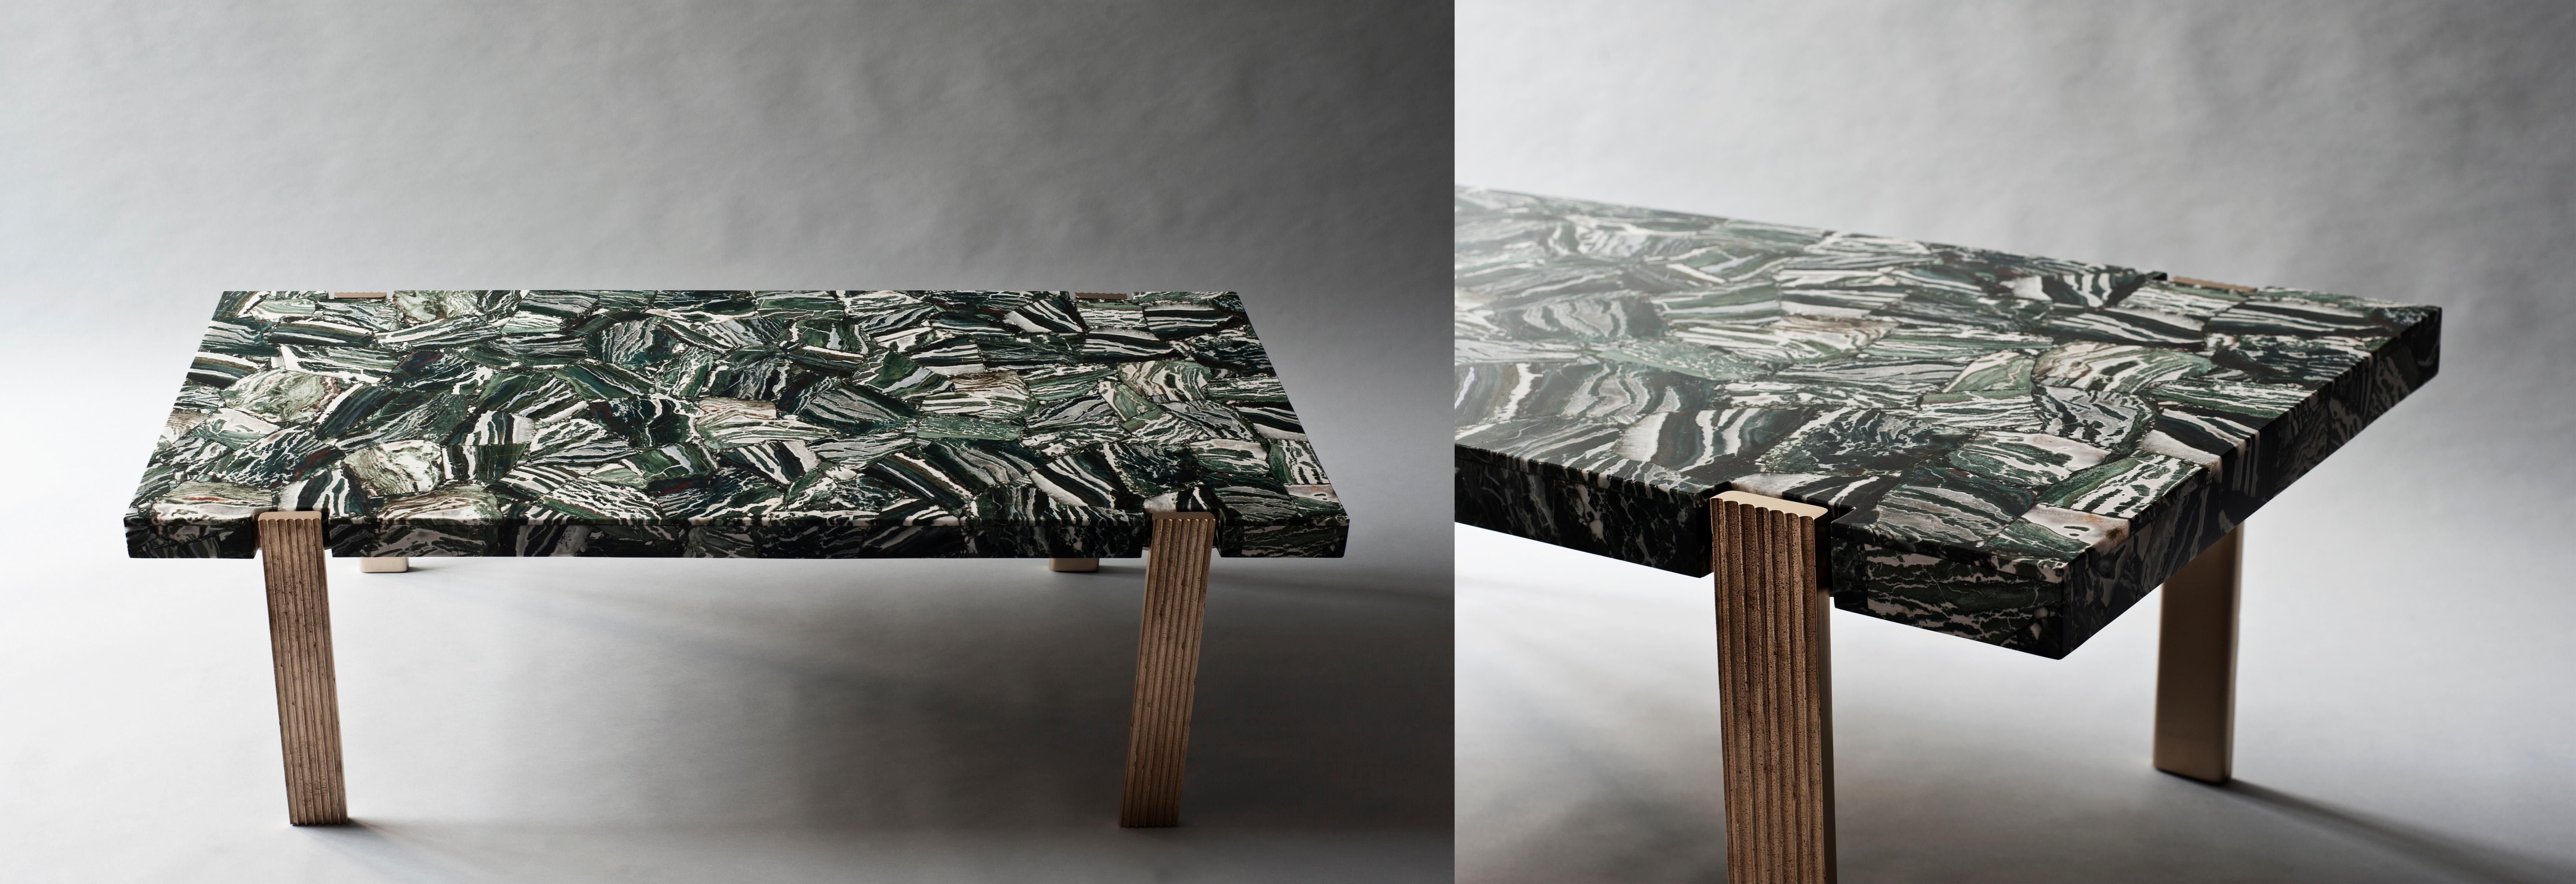 granite coffee table design